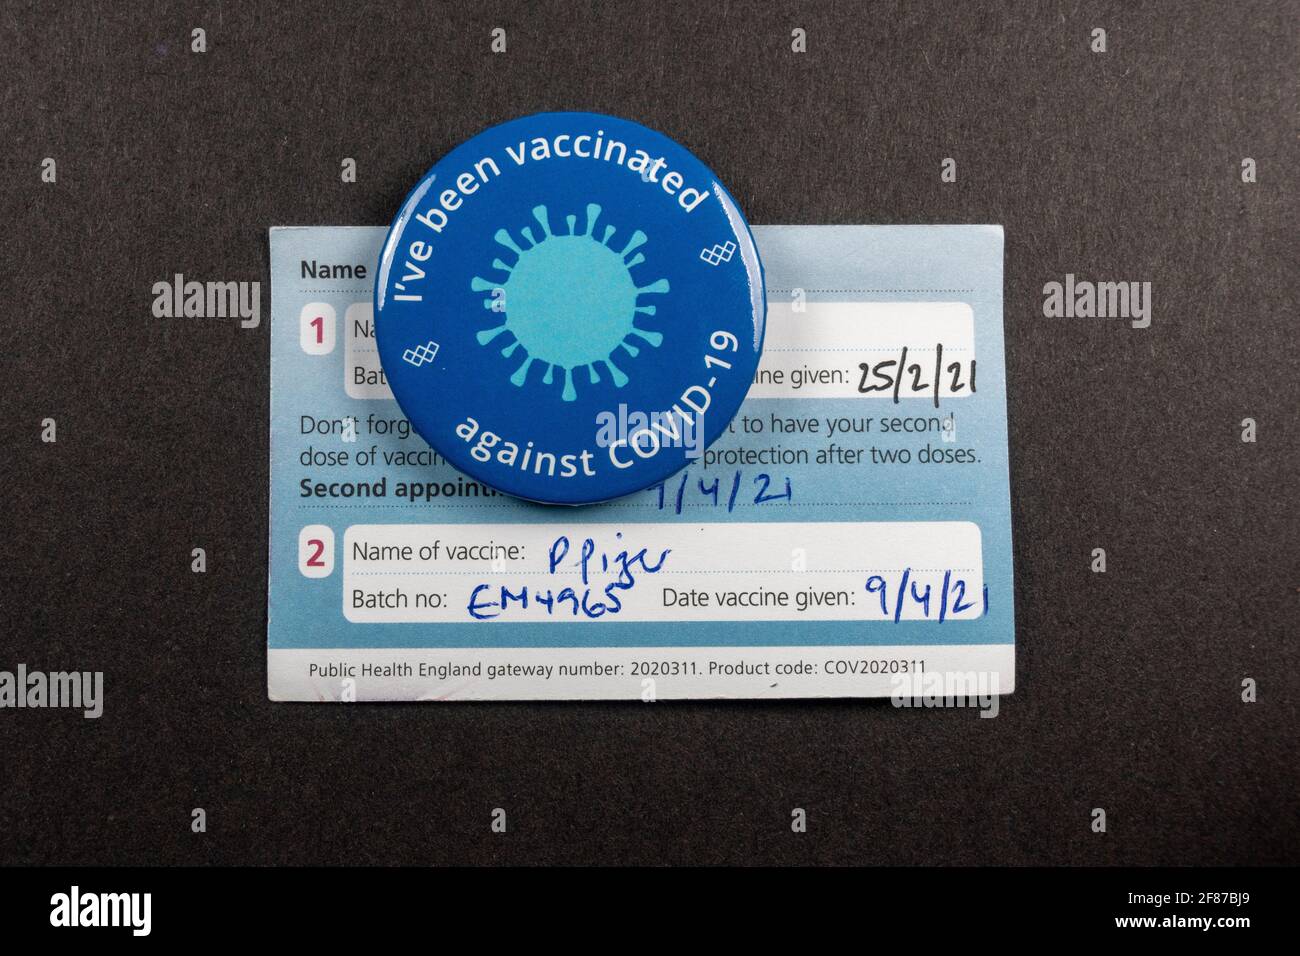 'He sido vacunado contra COVID-19' en una tarjeta de vacunación completa durante la pandemia de Coronavirus (2021). Foto de stock